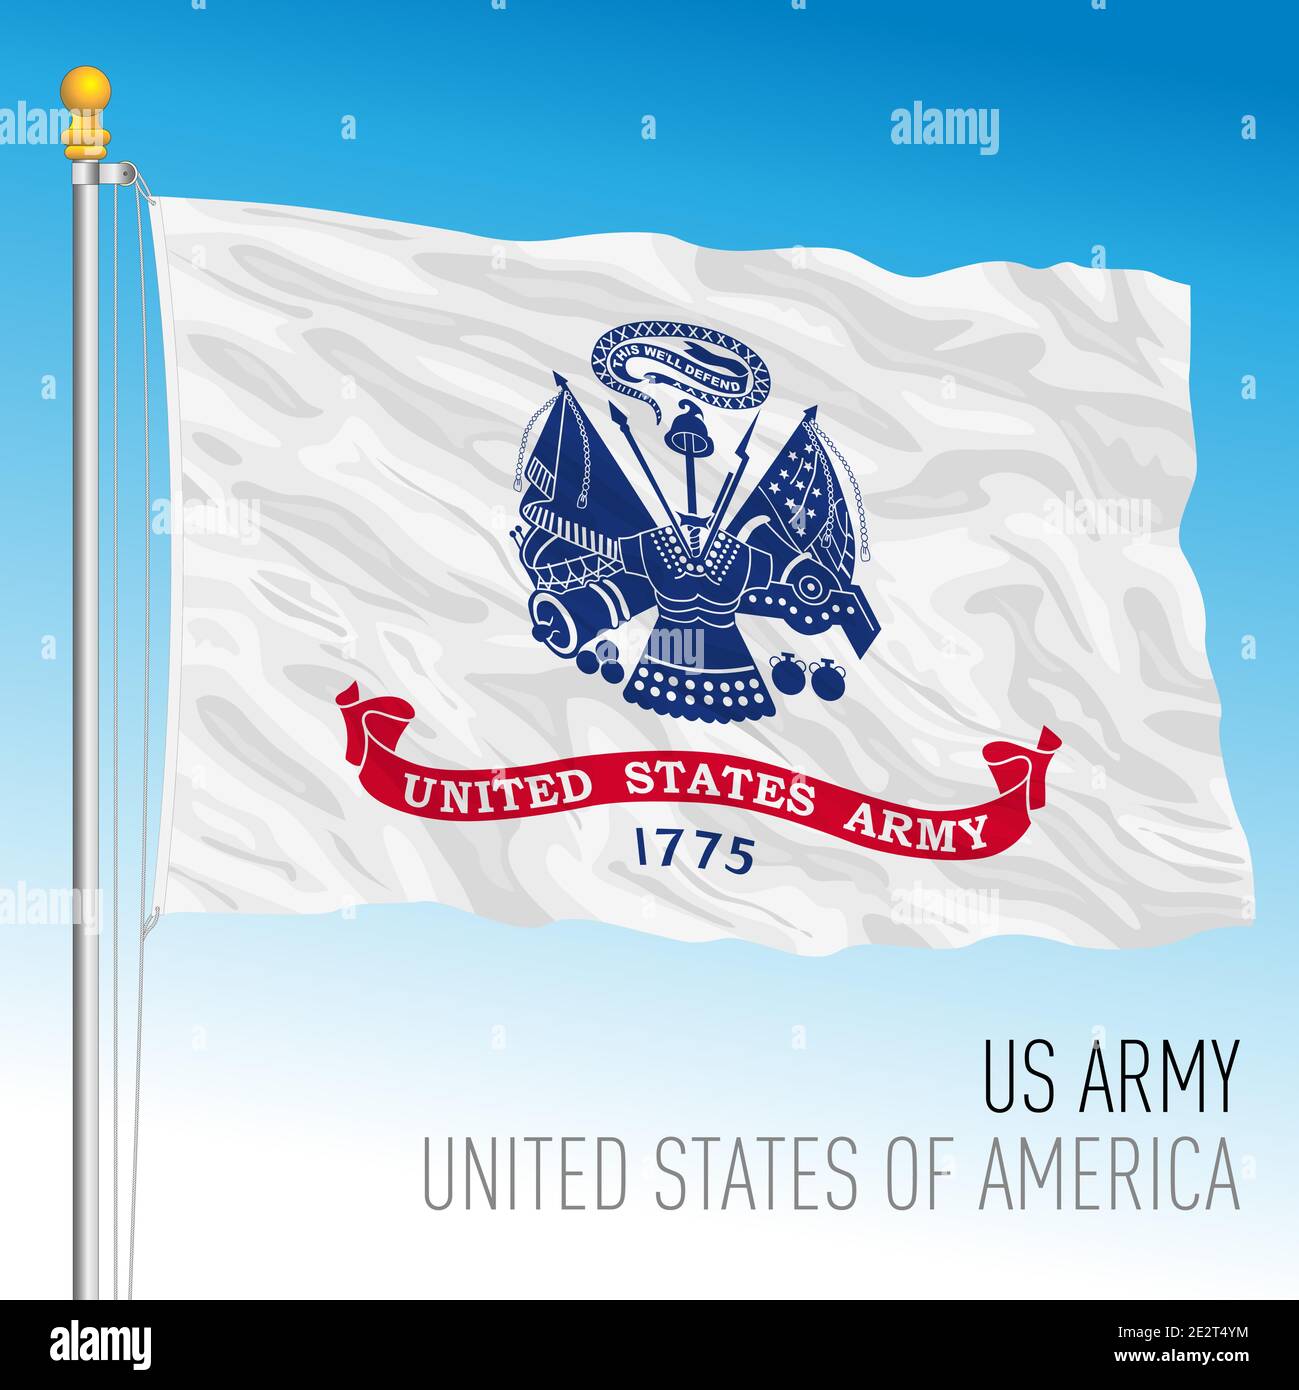 US Army offizielle Flagge, Vereinigte Staaten von Amerika, Vektor-Illustration Stock Vektor